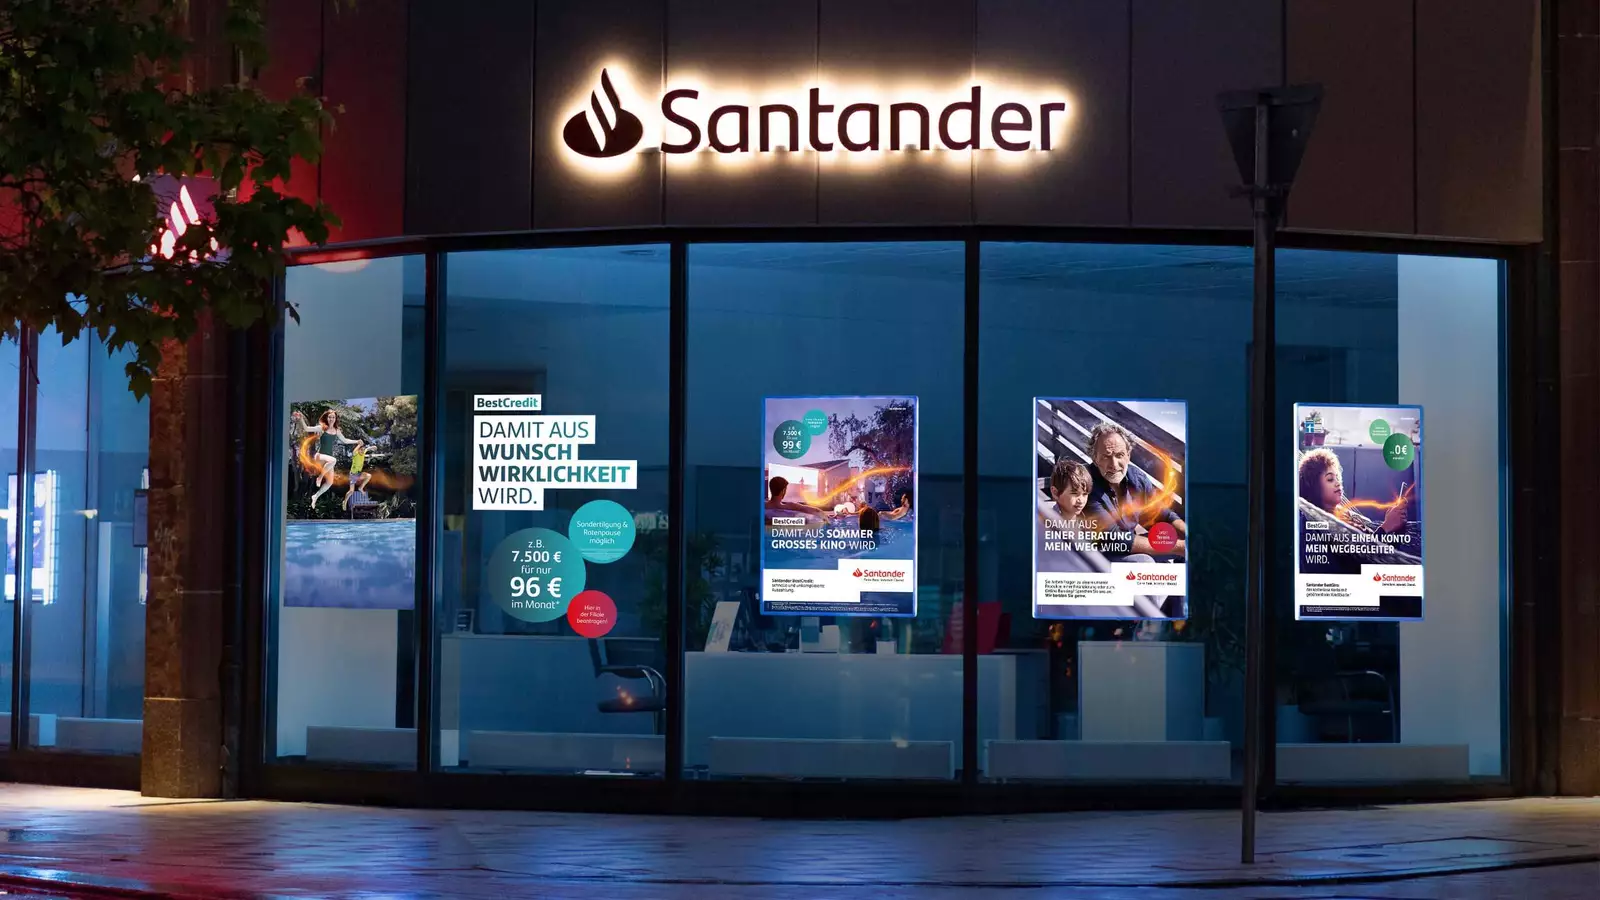 Das Bild zeigt beleuchtete Werbeplakate an den Fenstern der Santander Bank selbst.